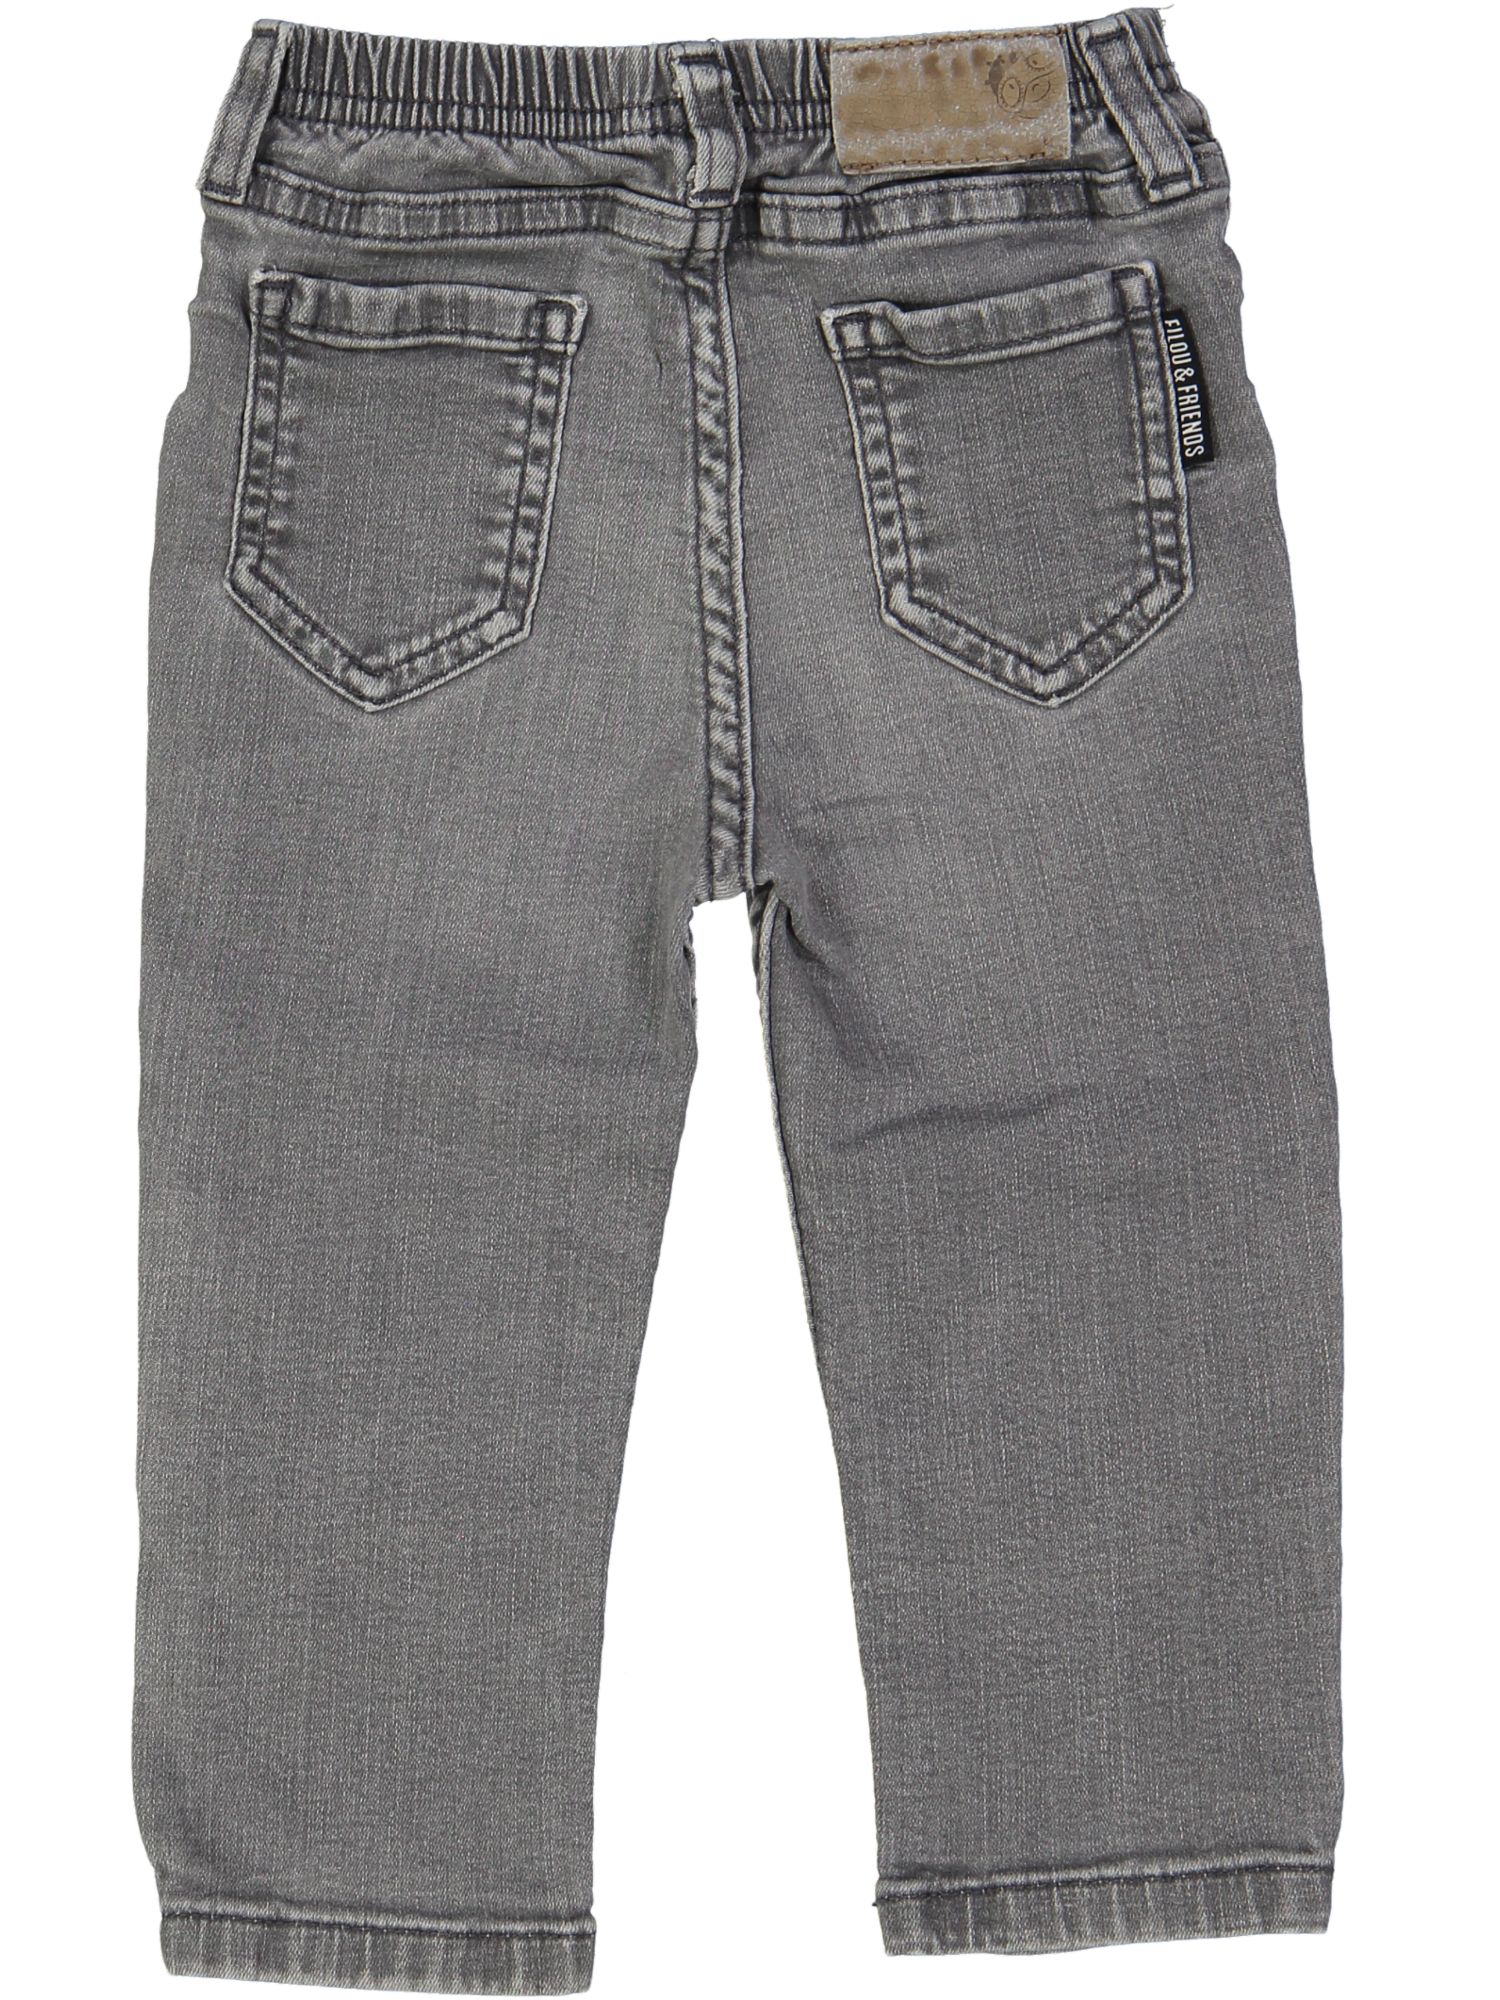 lange broek grijs jeans 12m